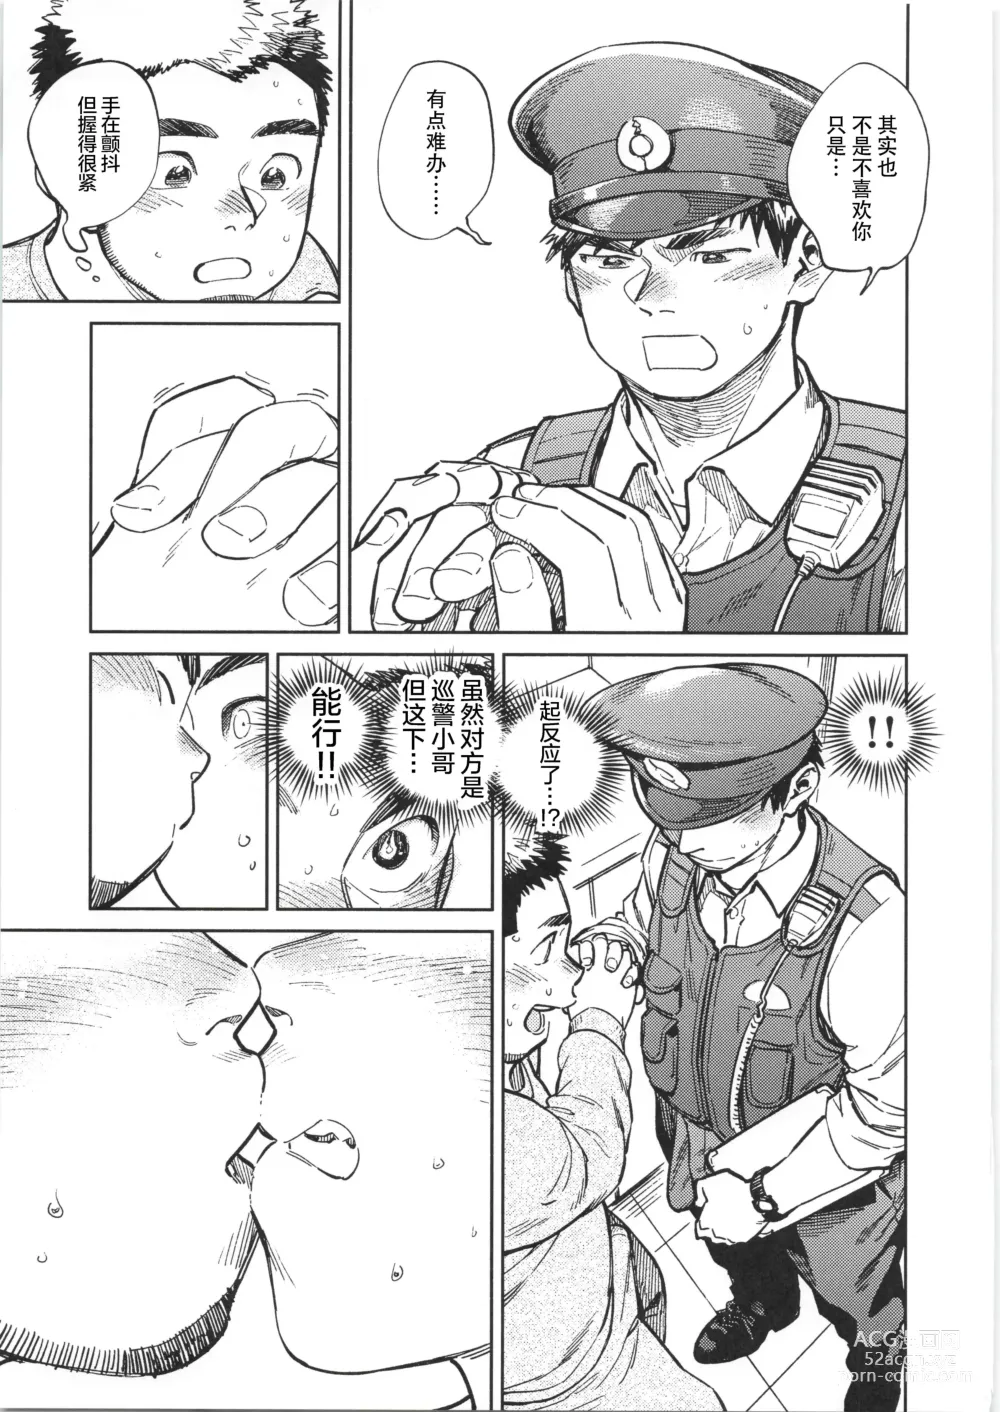 Page 20 of manga CHOGOKIN-004